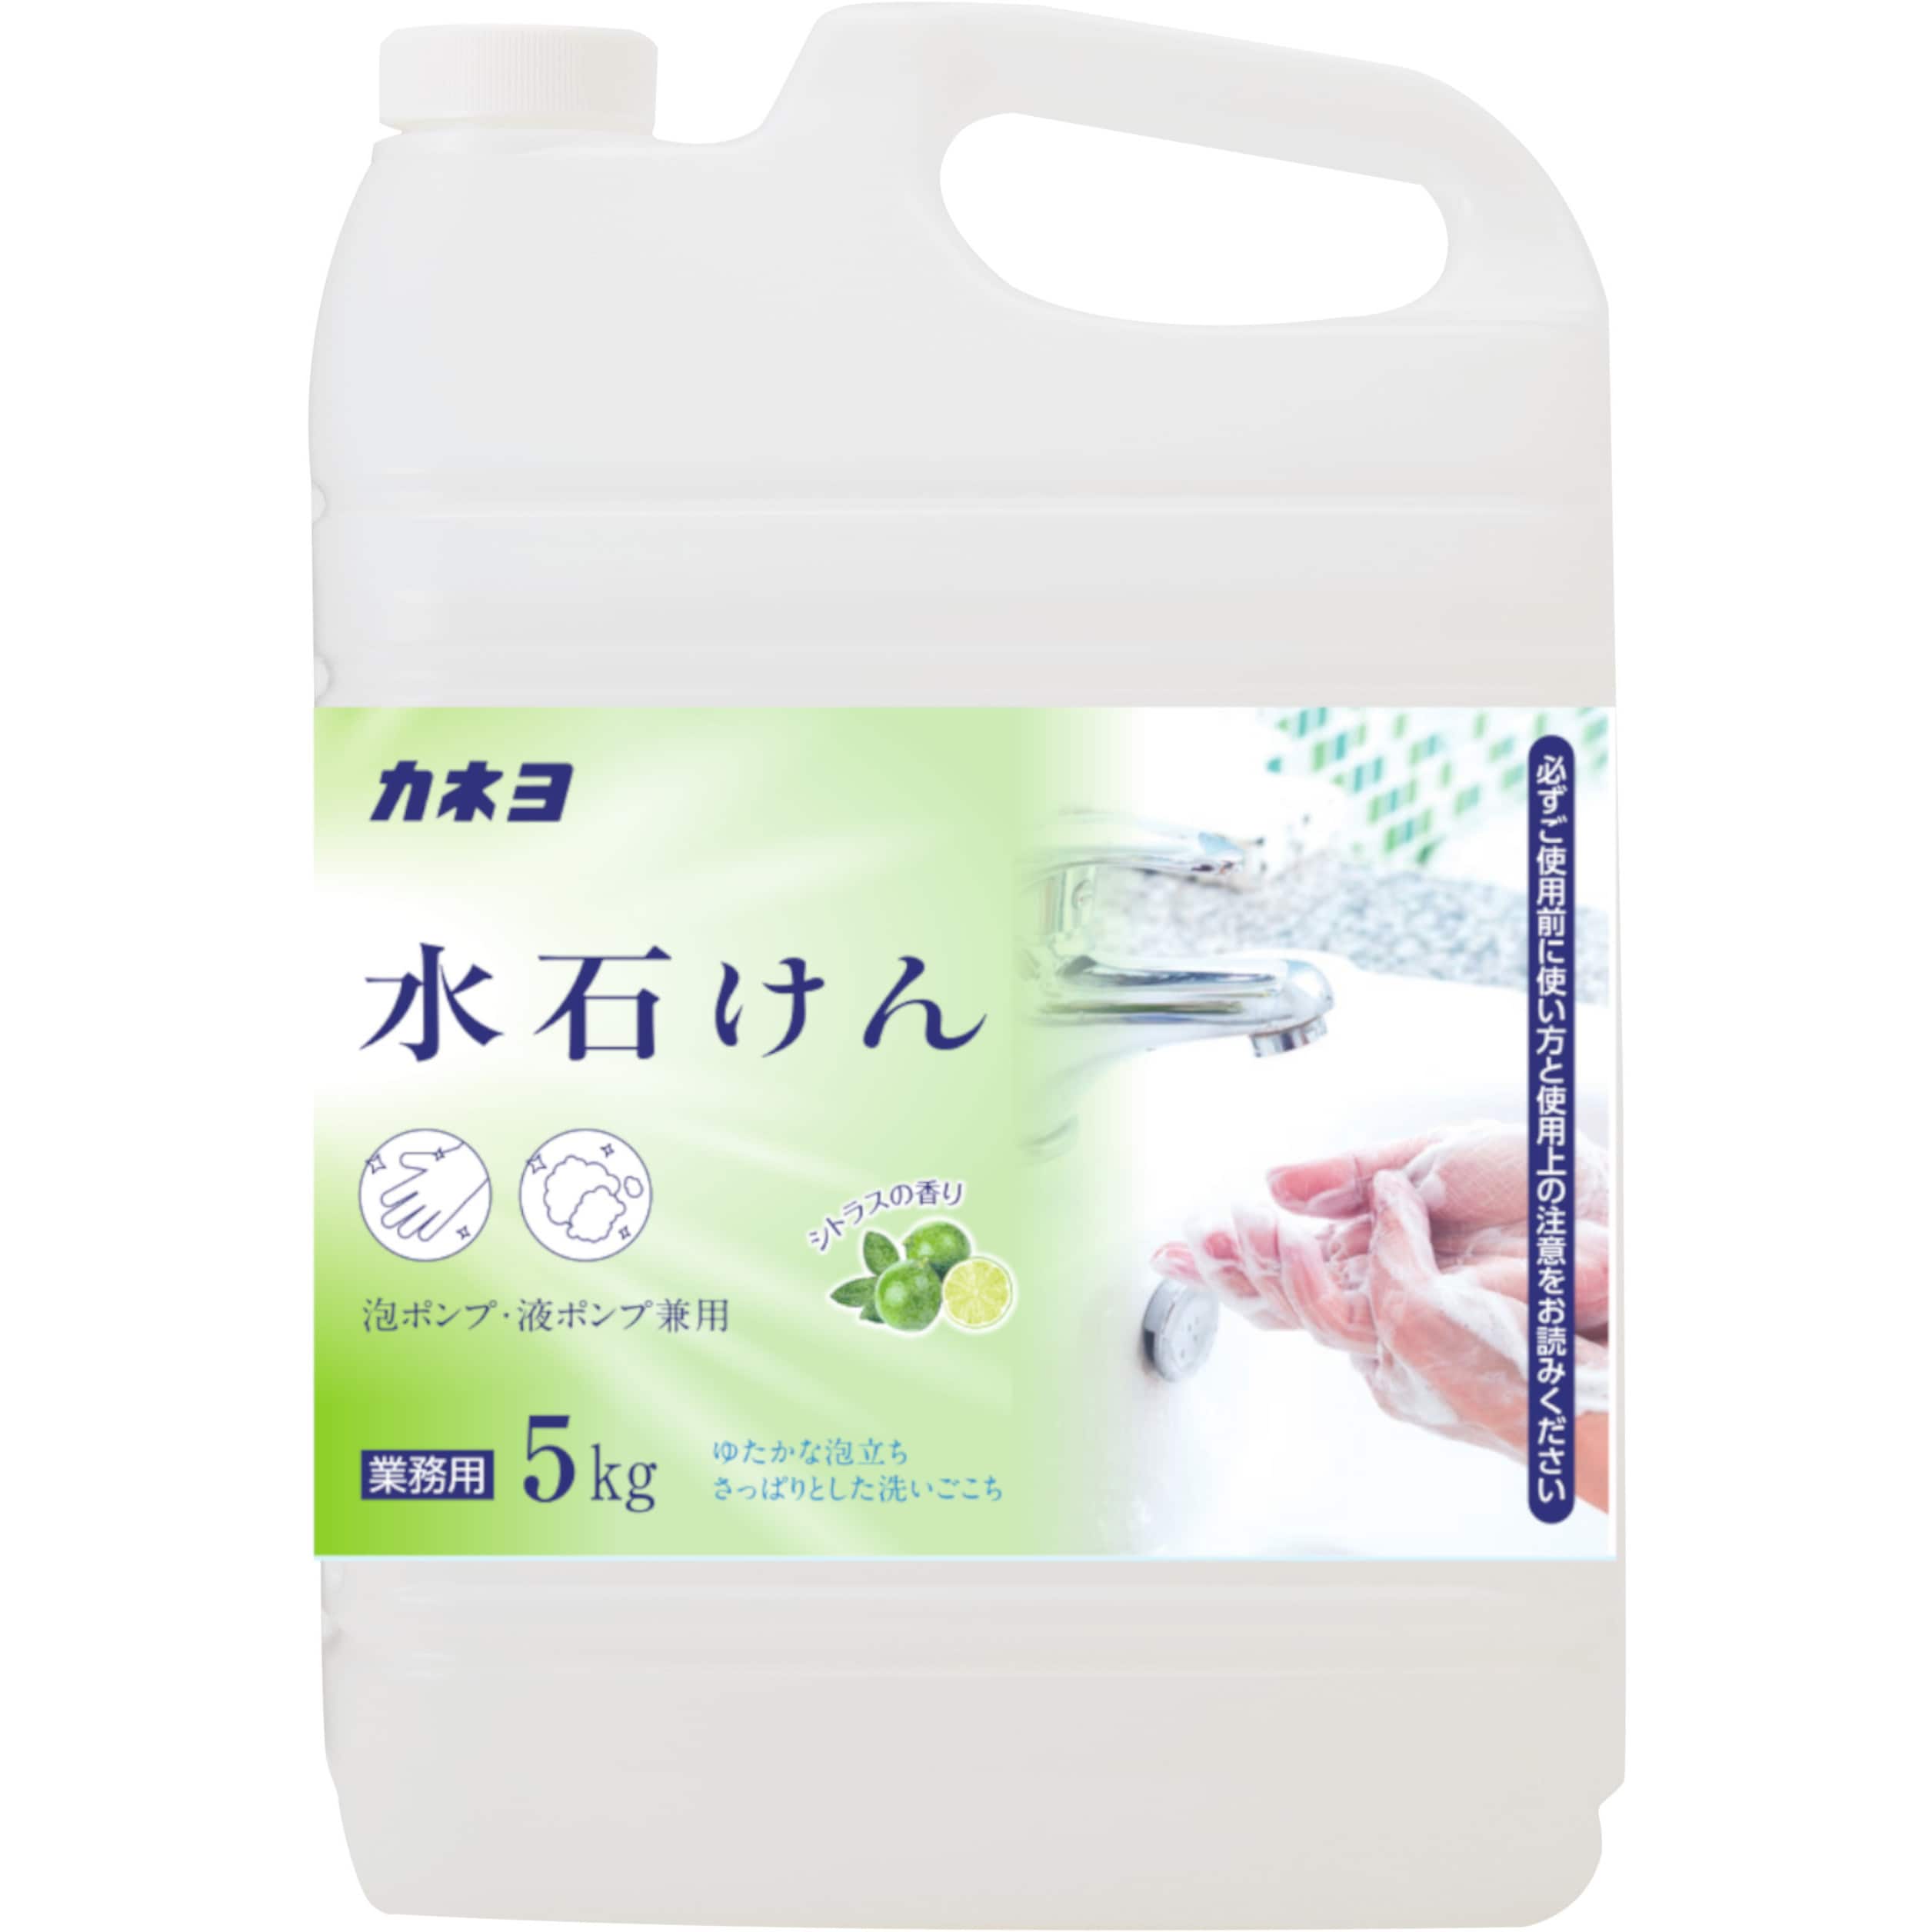 非常に高い品質 カネヨ石鹸 水石けん 5kg 手洗い用 業務用 ハンドソープ